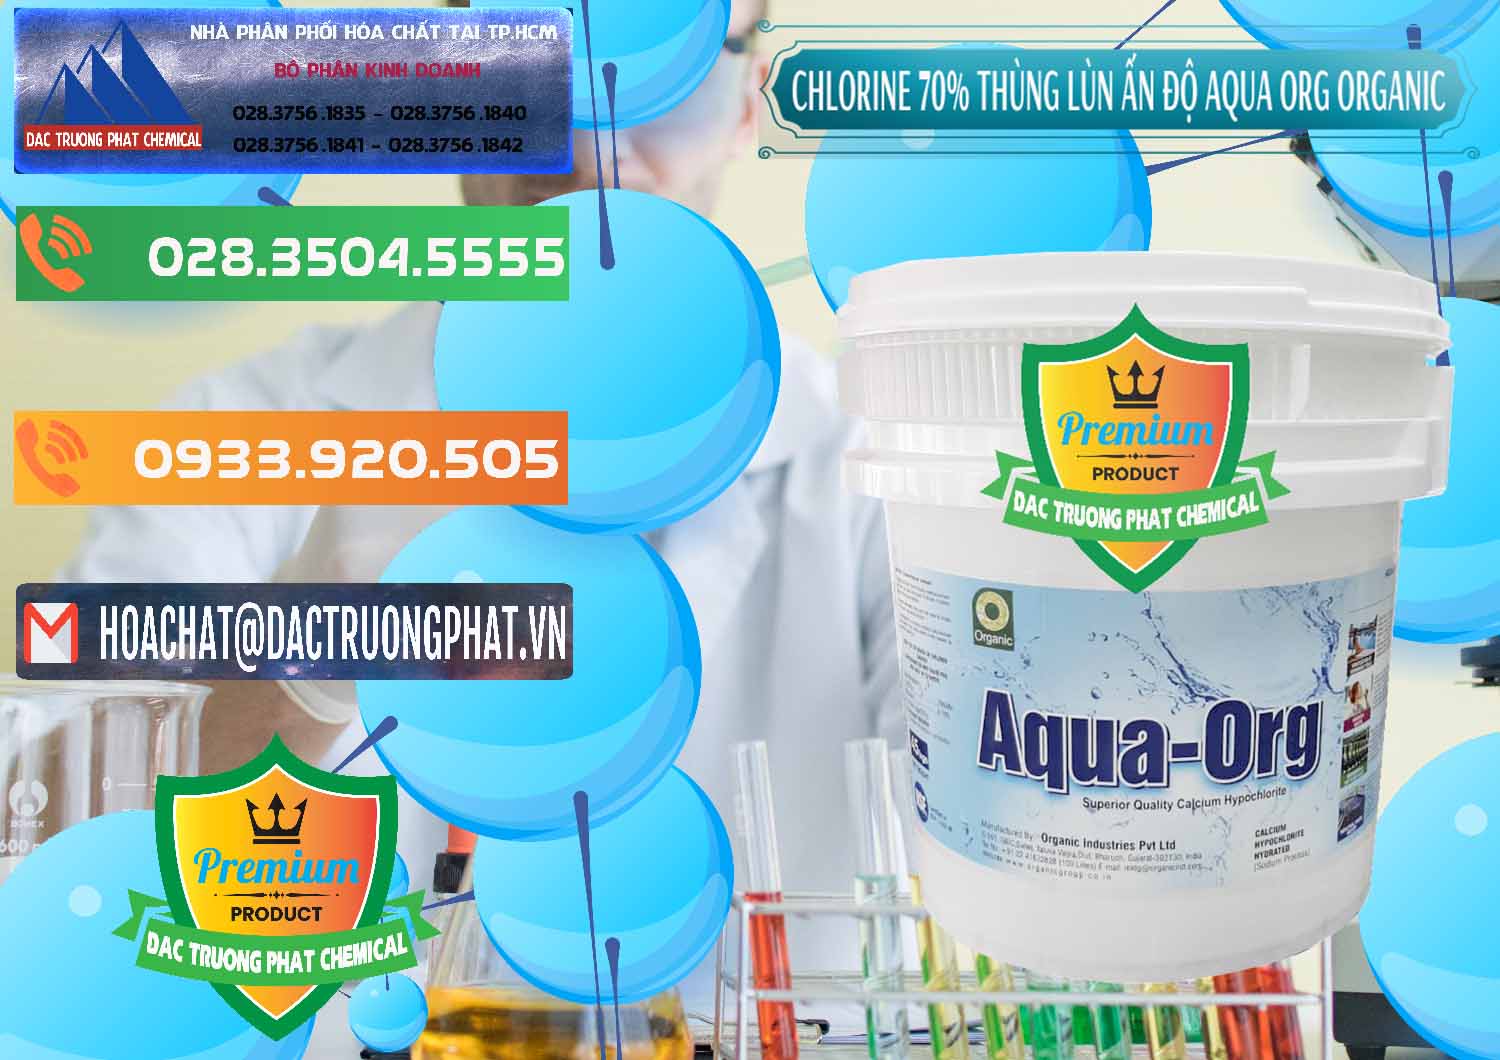 Cty kinh doanh và bán Chlorine – Clorin 70% Thùng Lùn Ấn Độ Aqua ORG Organic India - 0212 - Nhà phân phối ( cung cấp ) hóa chất tại TP.HCM - hoachatxulynuoc.com.vn